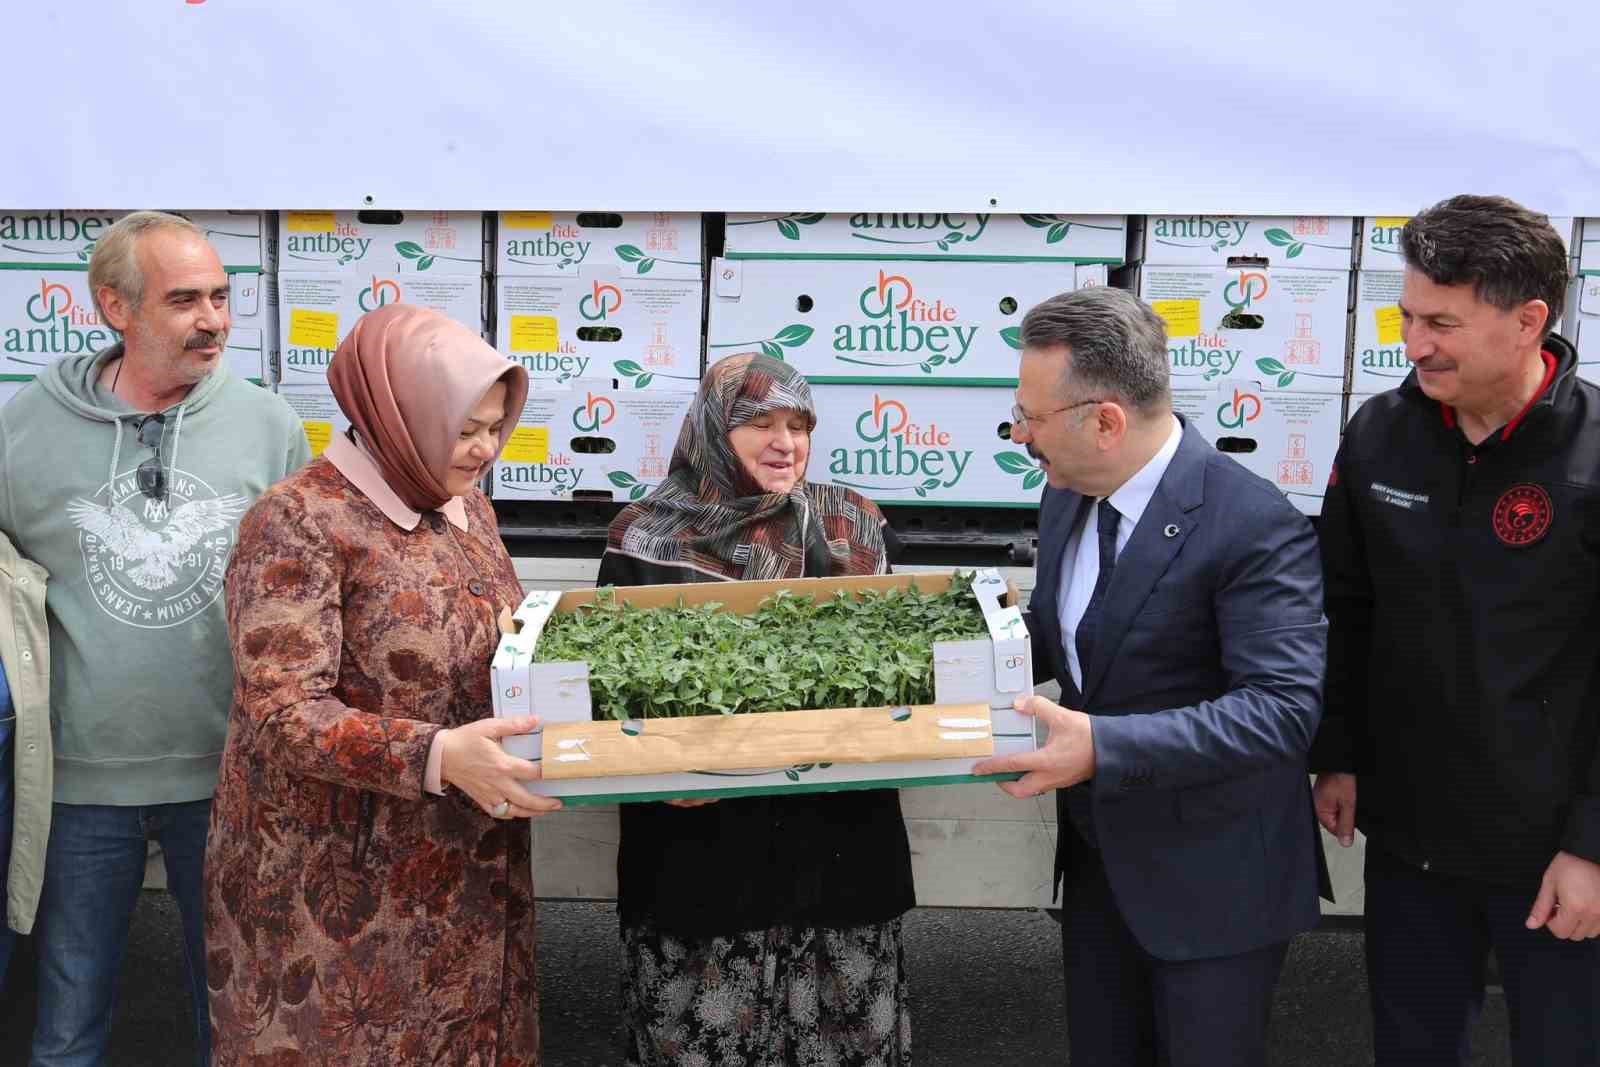 Vali Hüseyin Aksoy çiftçilere domates fidesi dağıttı